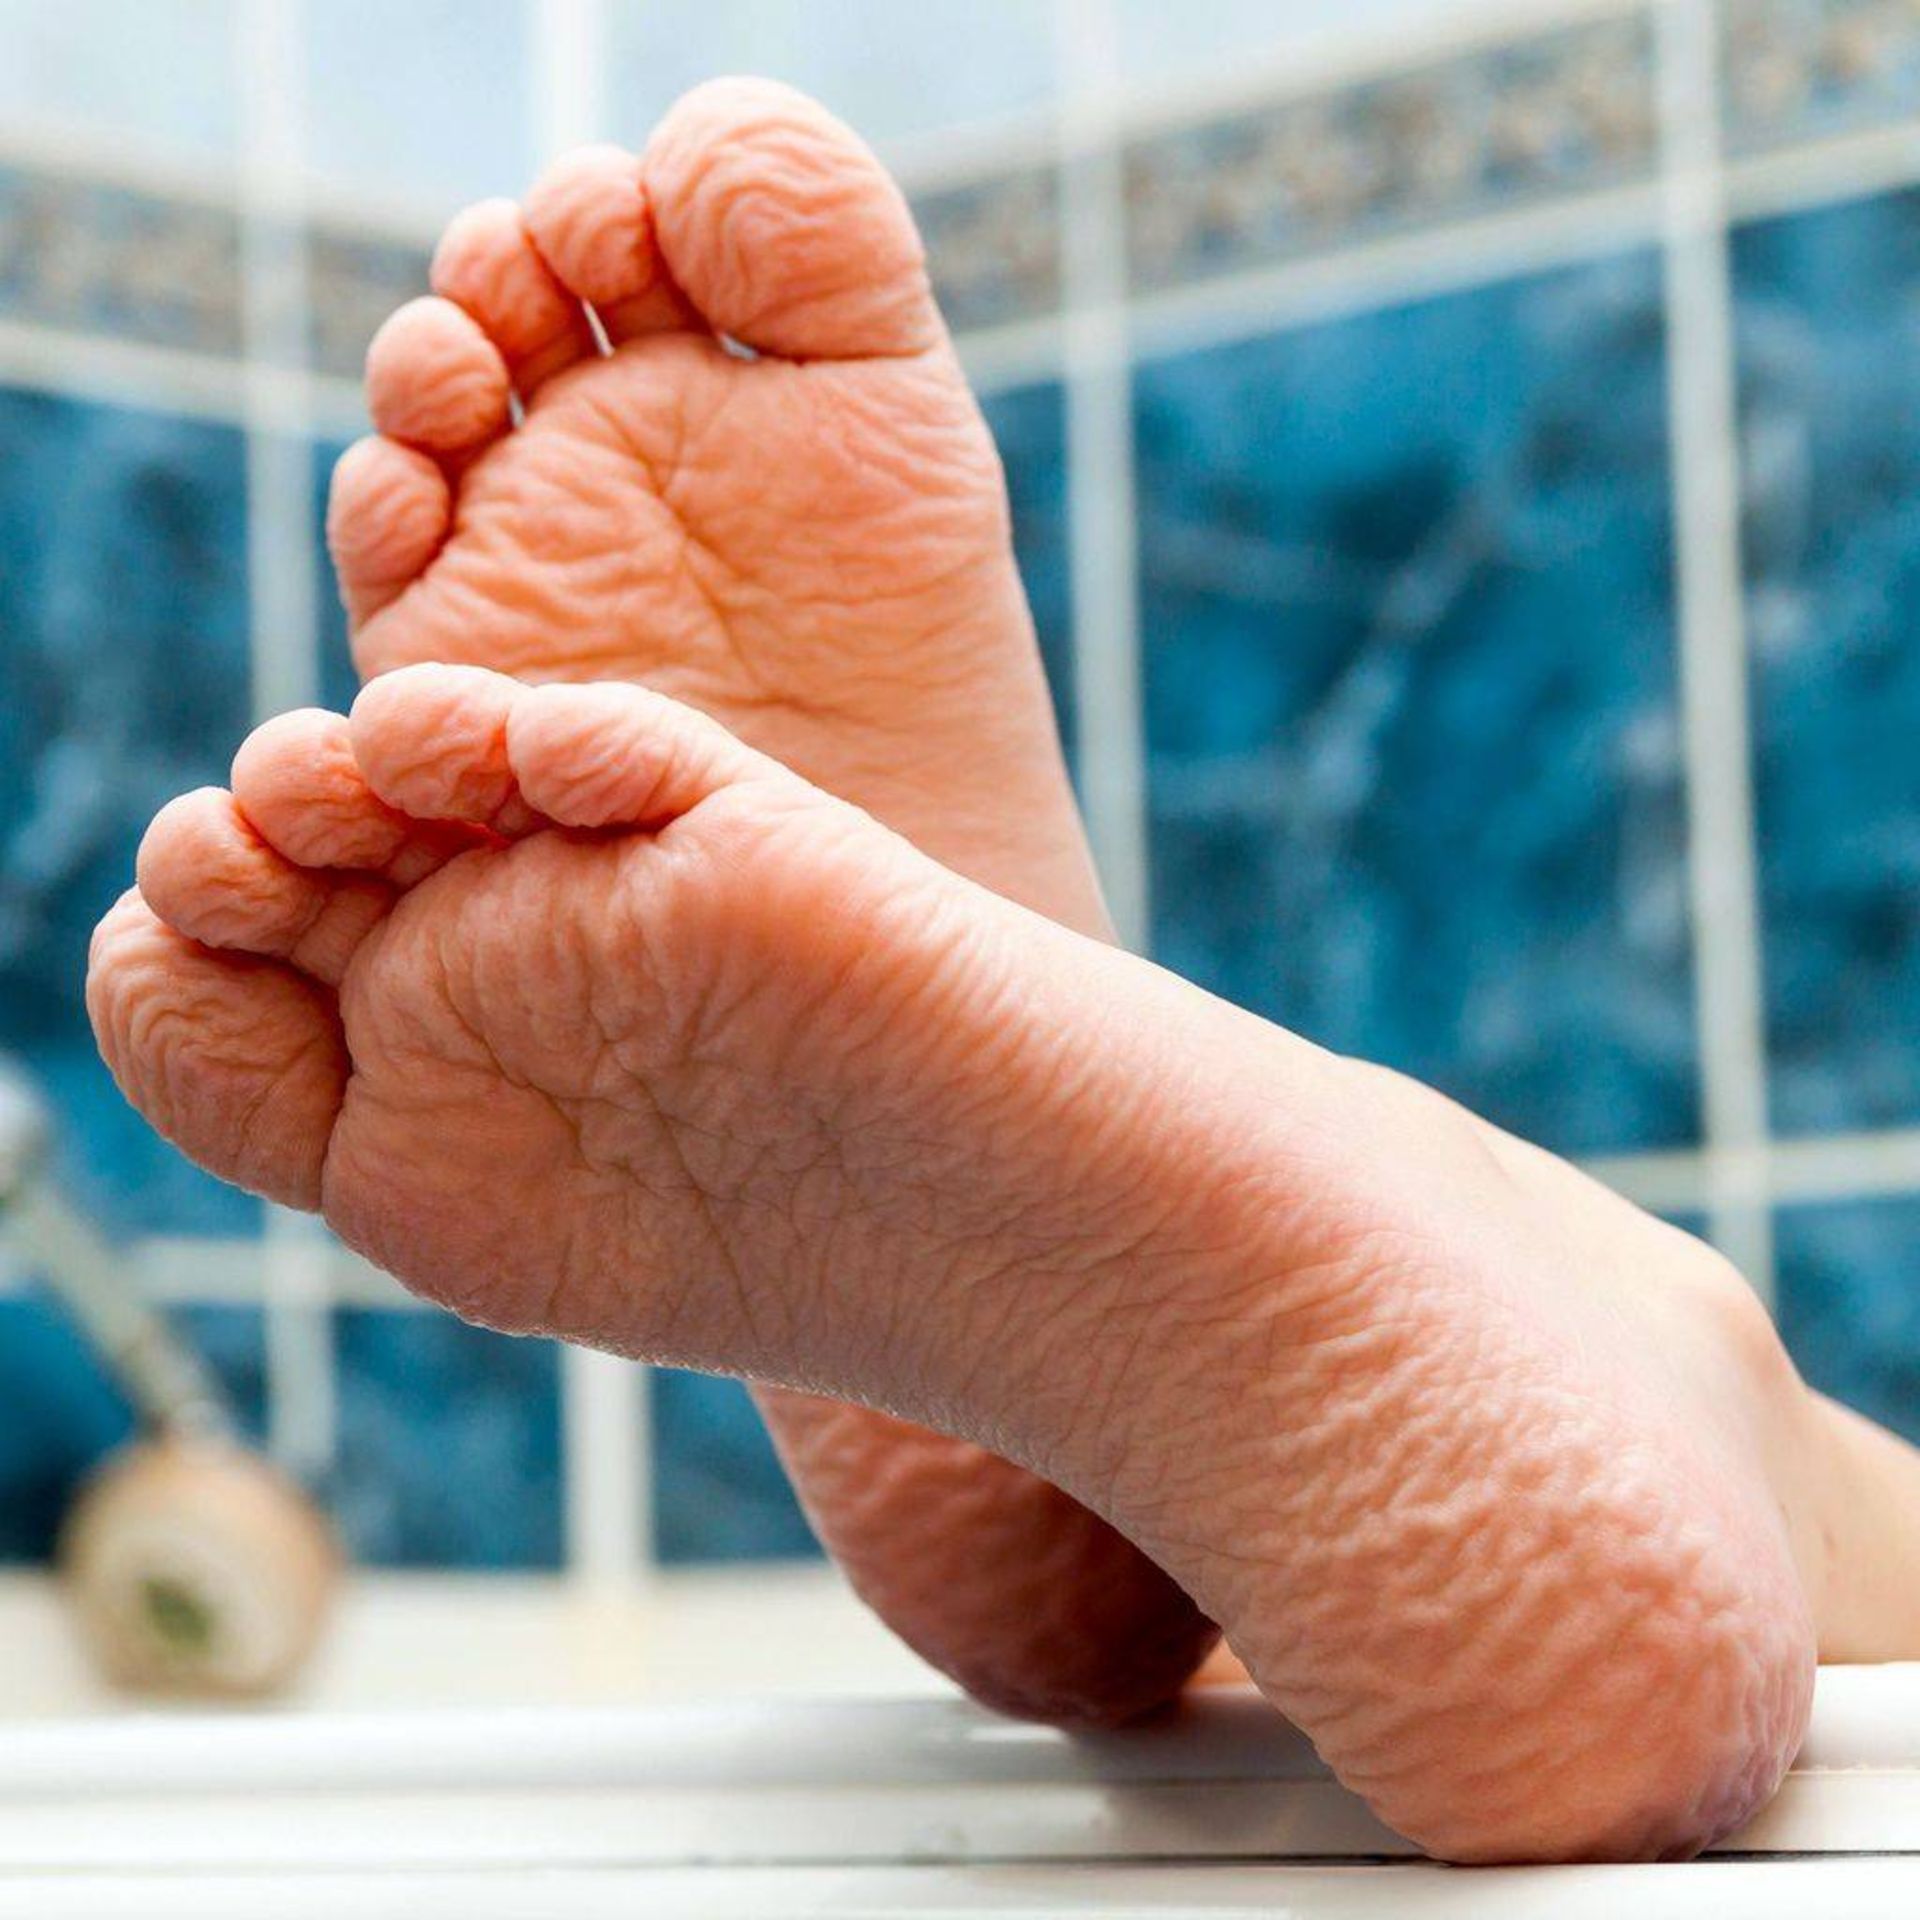 چروک شدن پوست پا در آب / feet